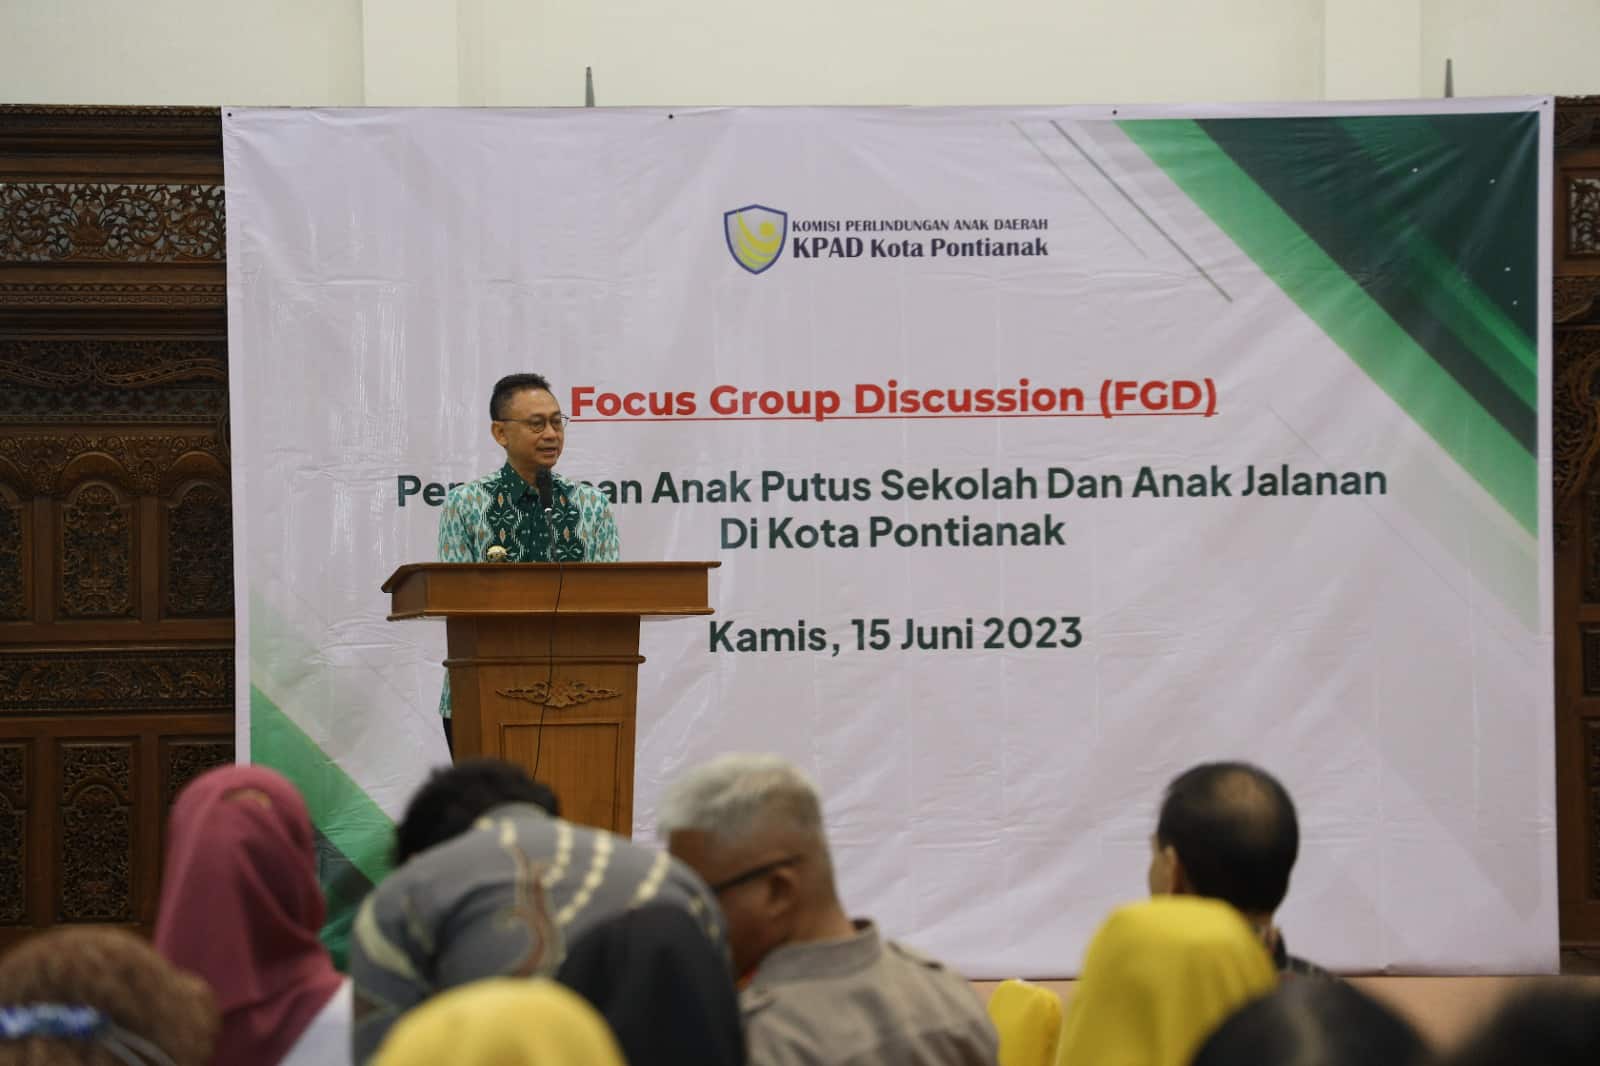 Focus Group Discussion (FGD) Penanganan Anak Putus Sekolah dan Anak Jalanan. (Foto: Indri)